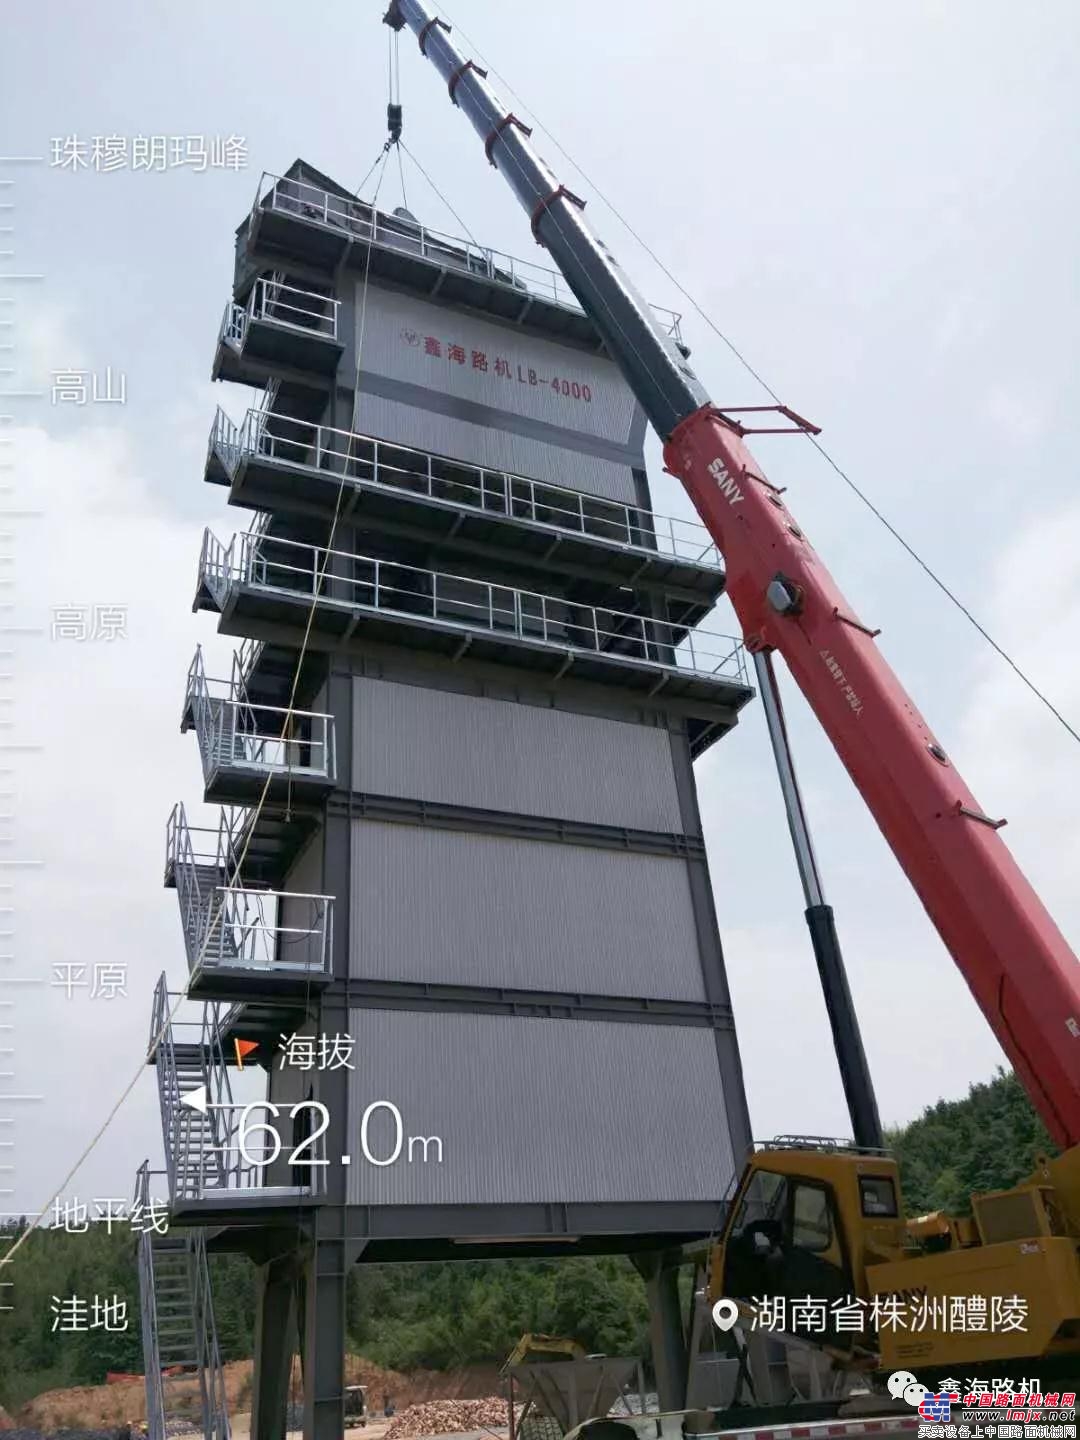 賀鑫海路機LB—4000型瀝青攪拌站在湖南醴陵安裝成功